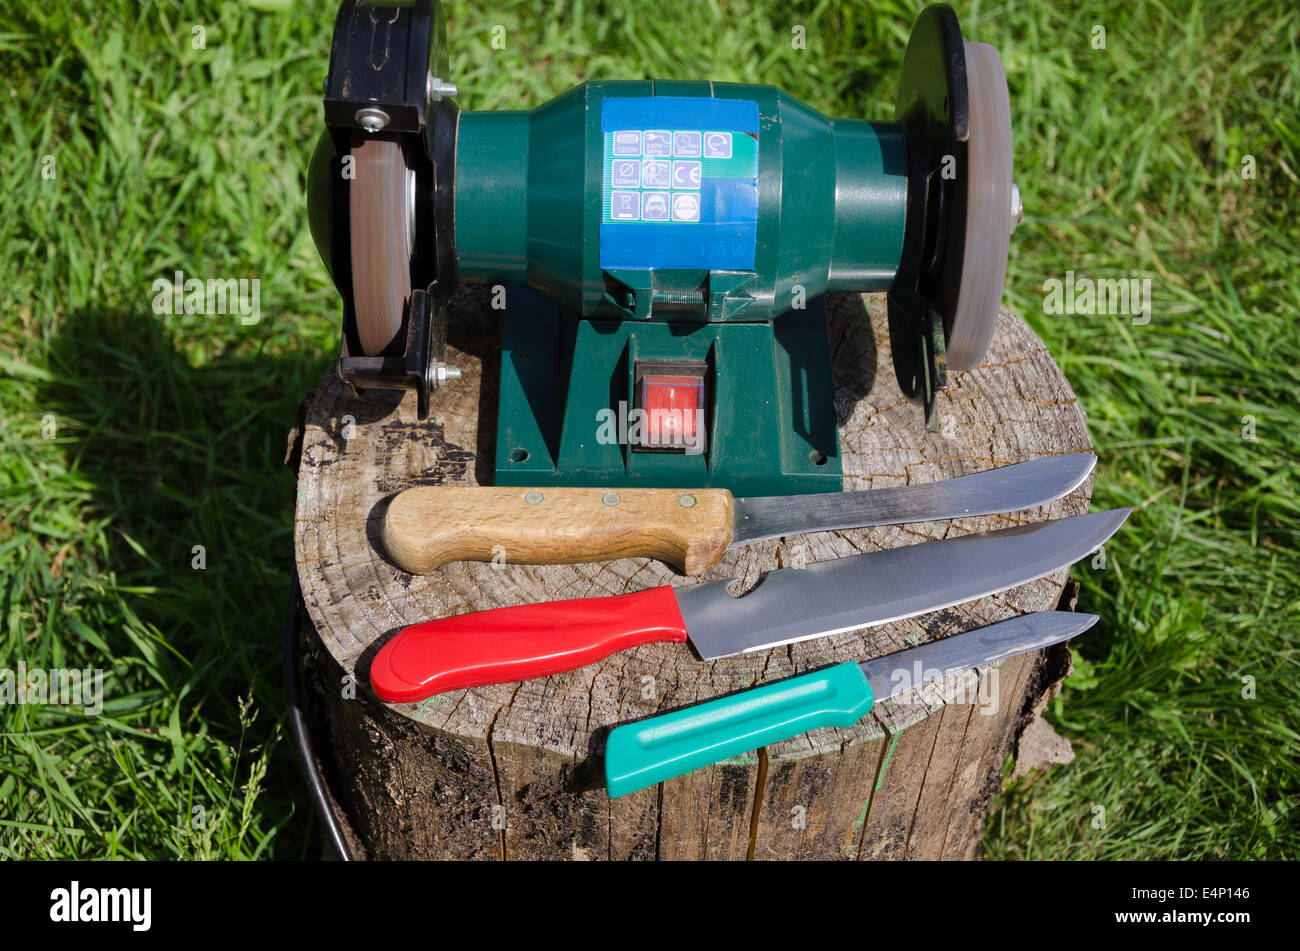 https://c8.alamy.com/compes/e4p146/dispositivo-de-afilado-de-cuchilla-electrica-y-tres-cuchillos-de-cocina-en-stump-outdoor-e4p146.jpg